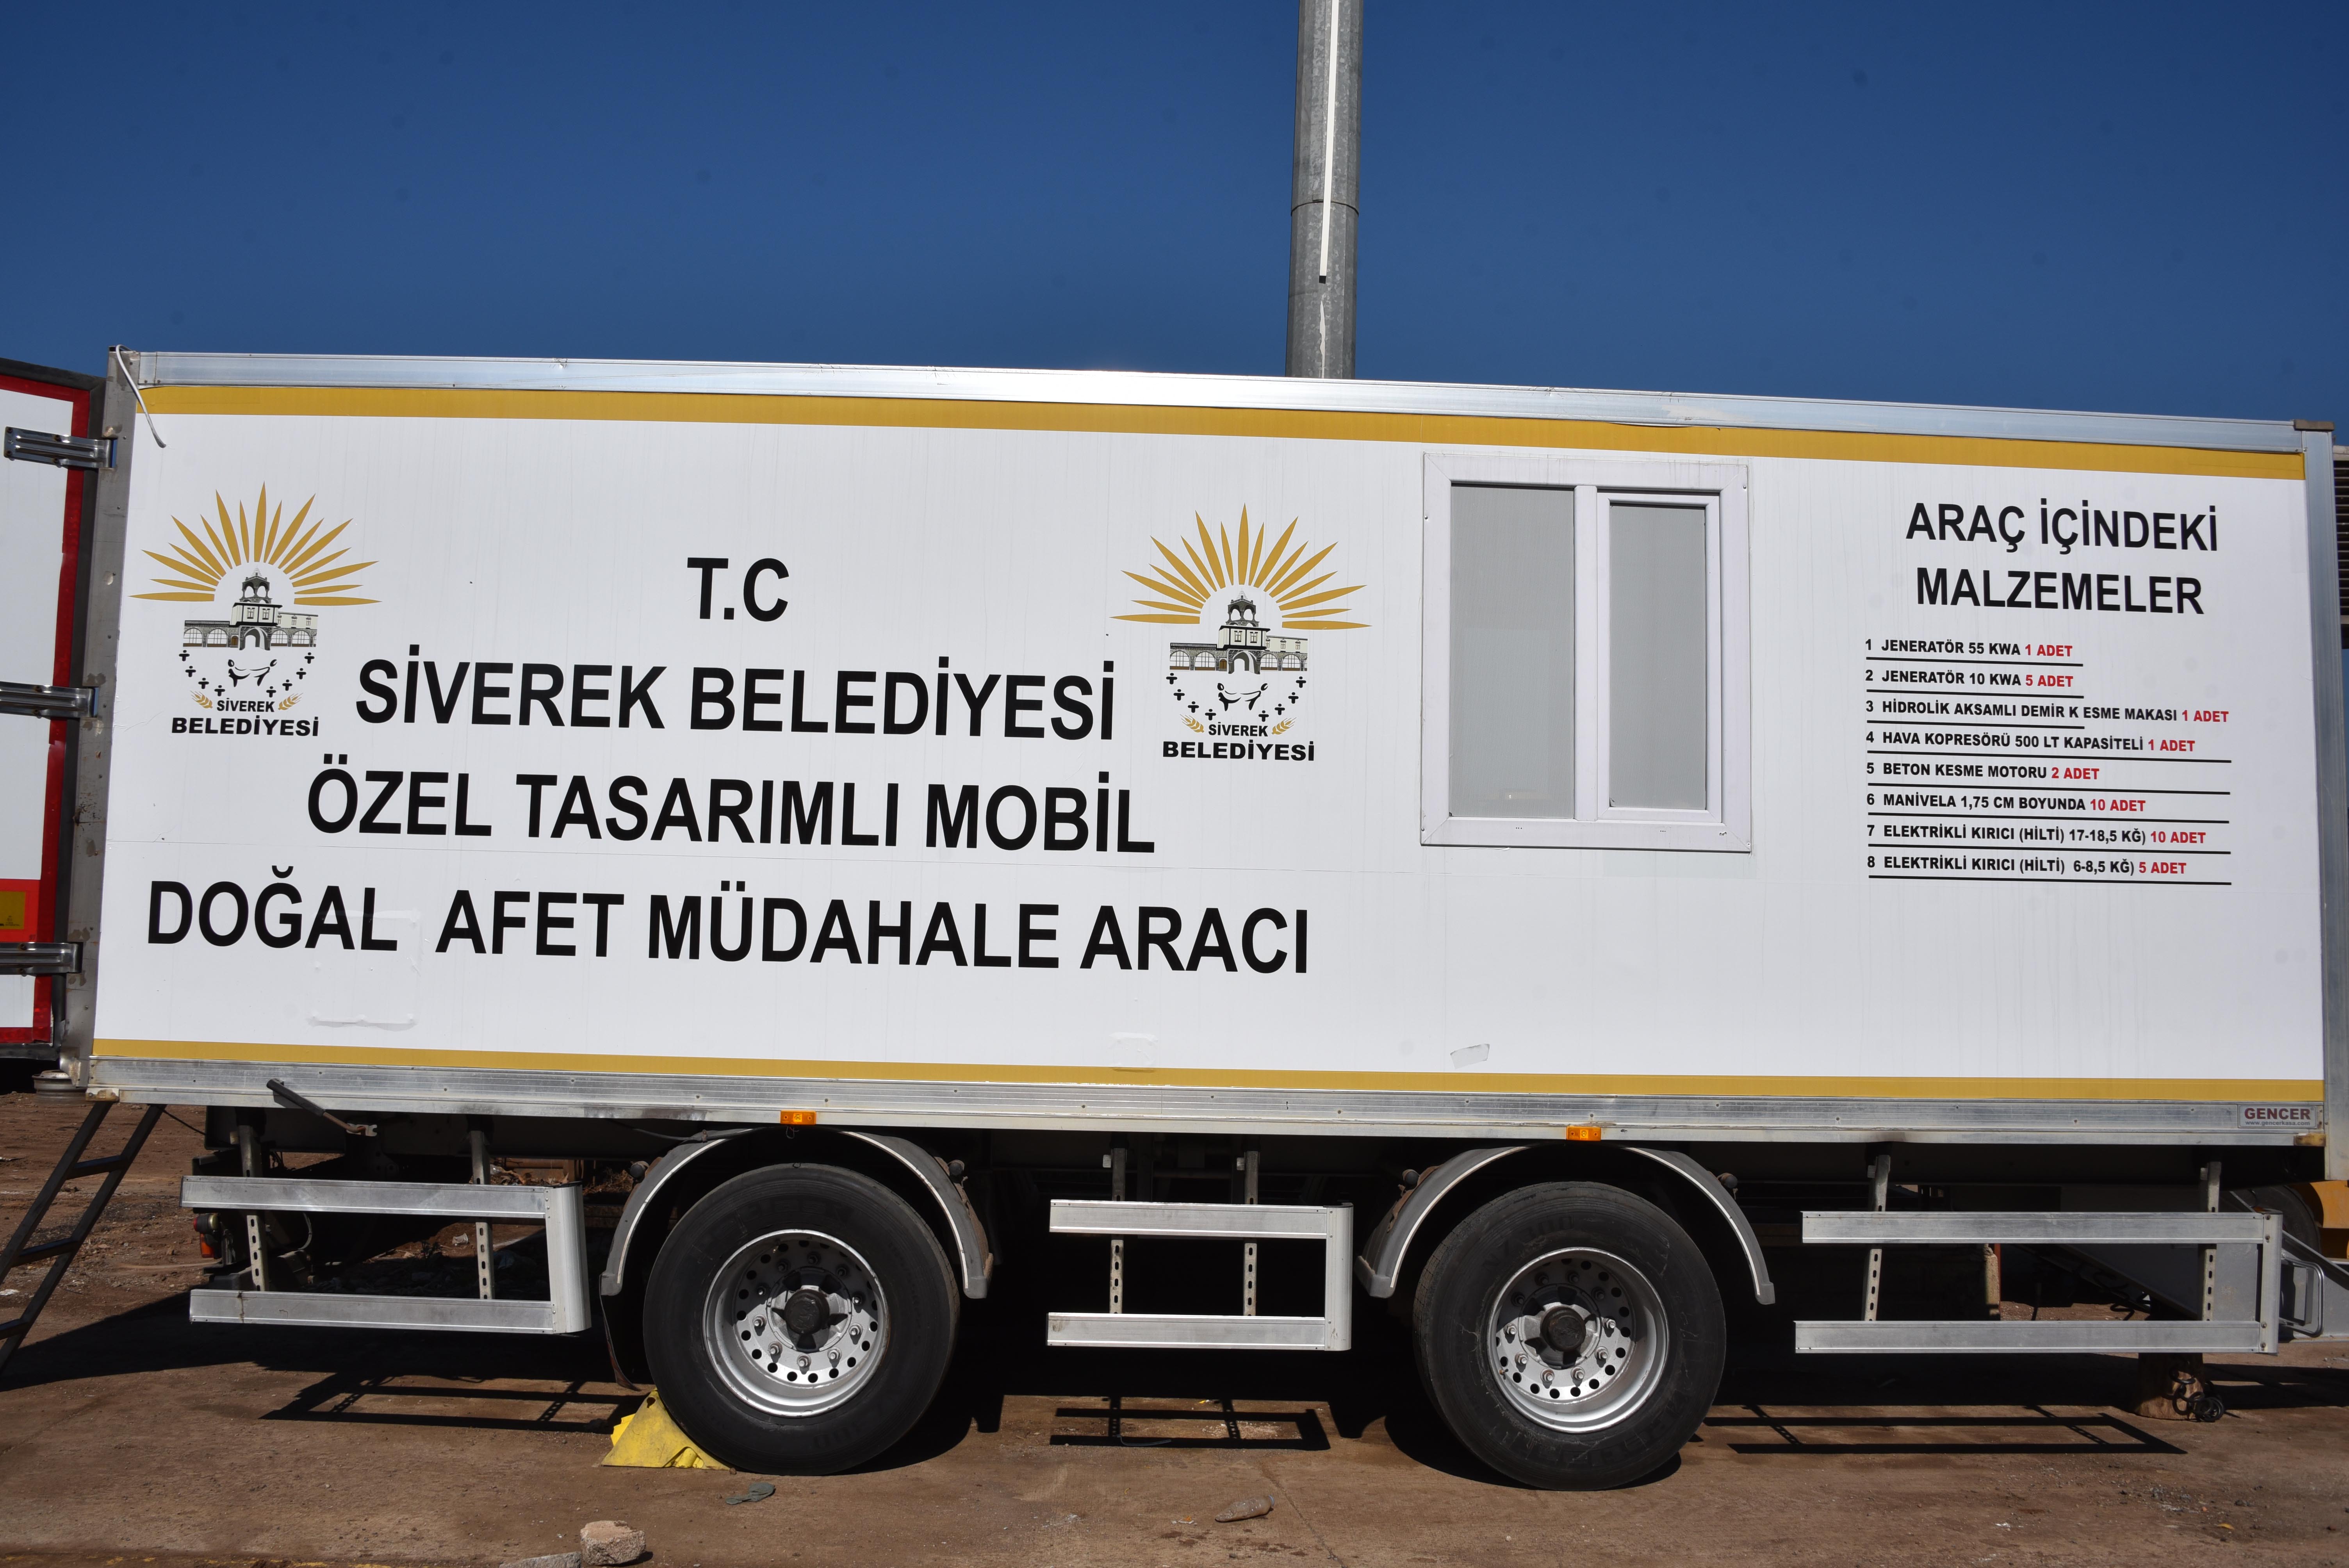 Siverek Belediyesi, Türkiye'de ilk "Doğal Afet Müdahale Aracı"nı filosuna kattı;